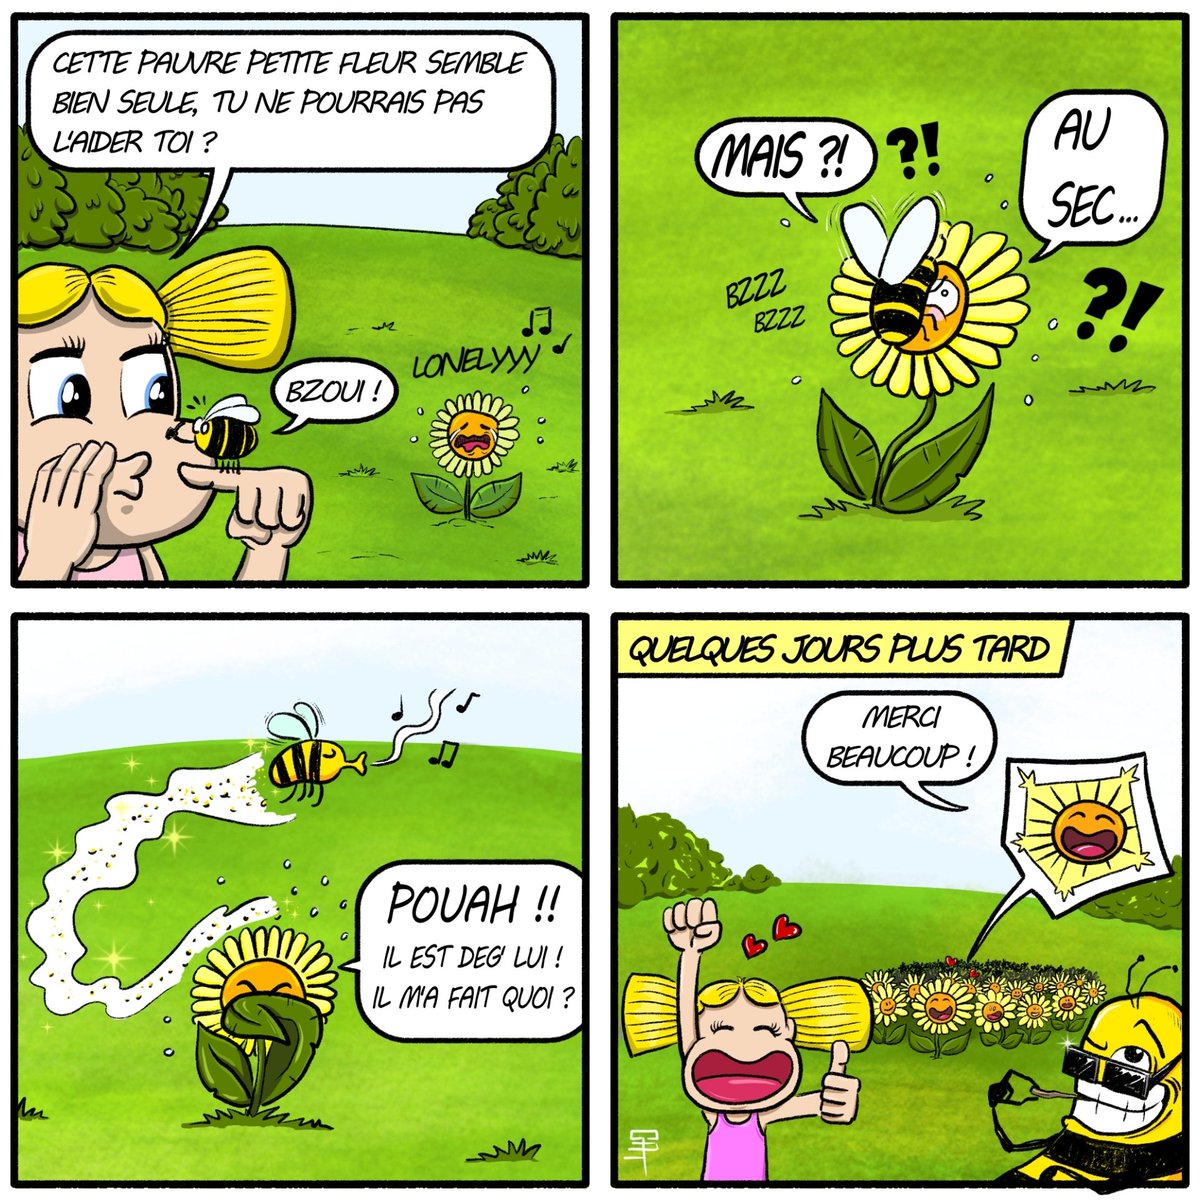 Protégeons les abeilles 🙏🐝
#gatgatz #abeilles #printemps #dessin #drawing #dessindujour #drawingoftheday #comicstrip #bandedessinée #fleurs